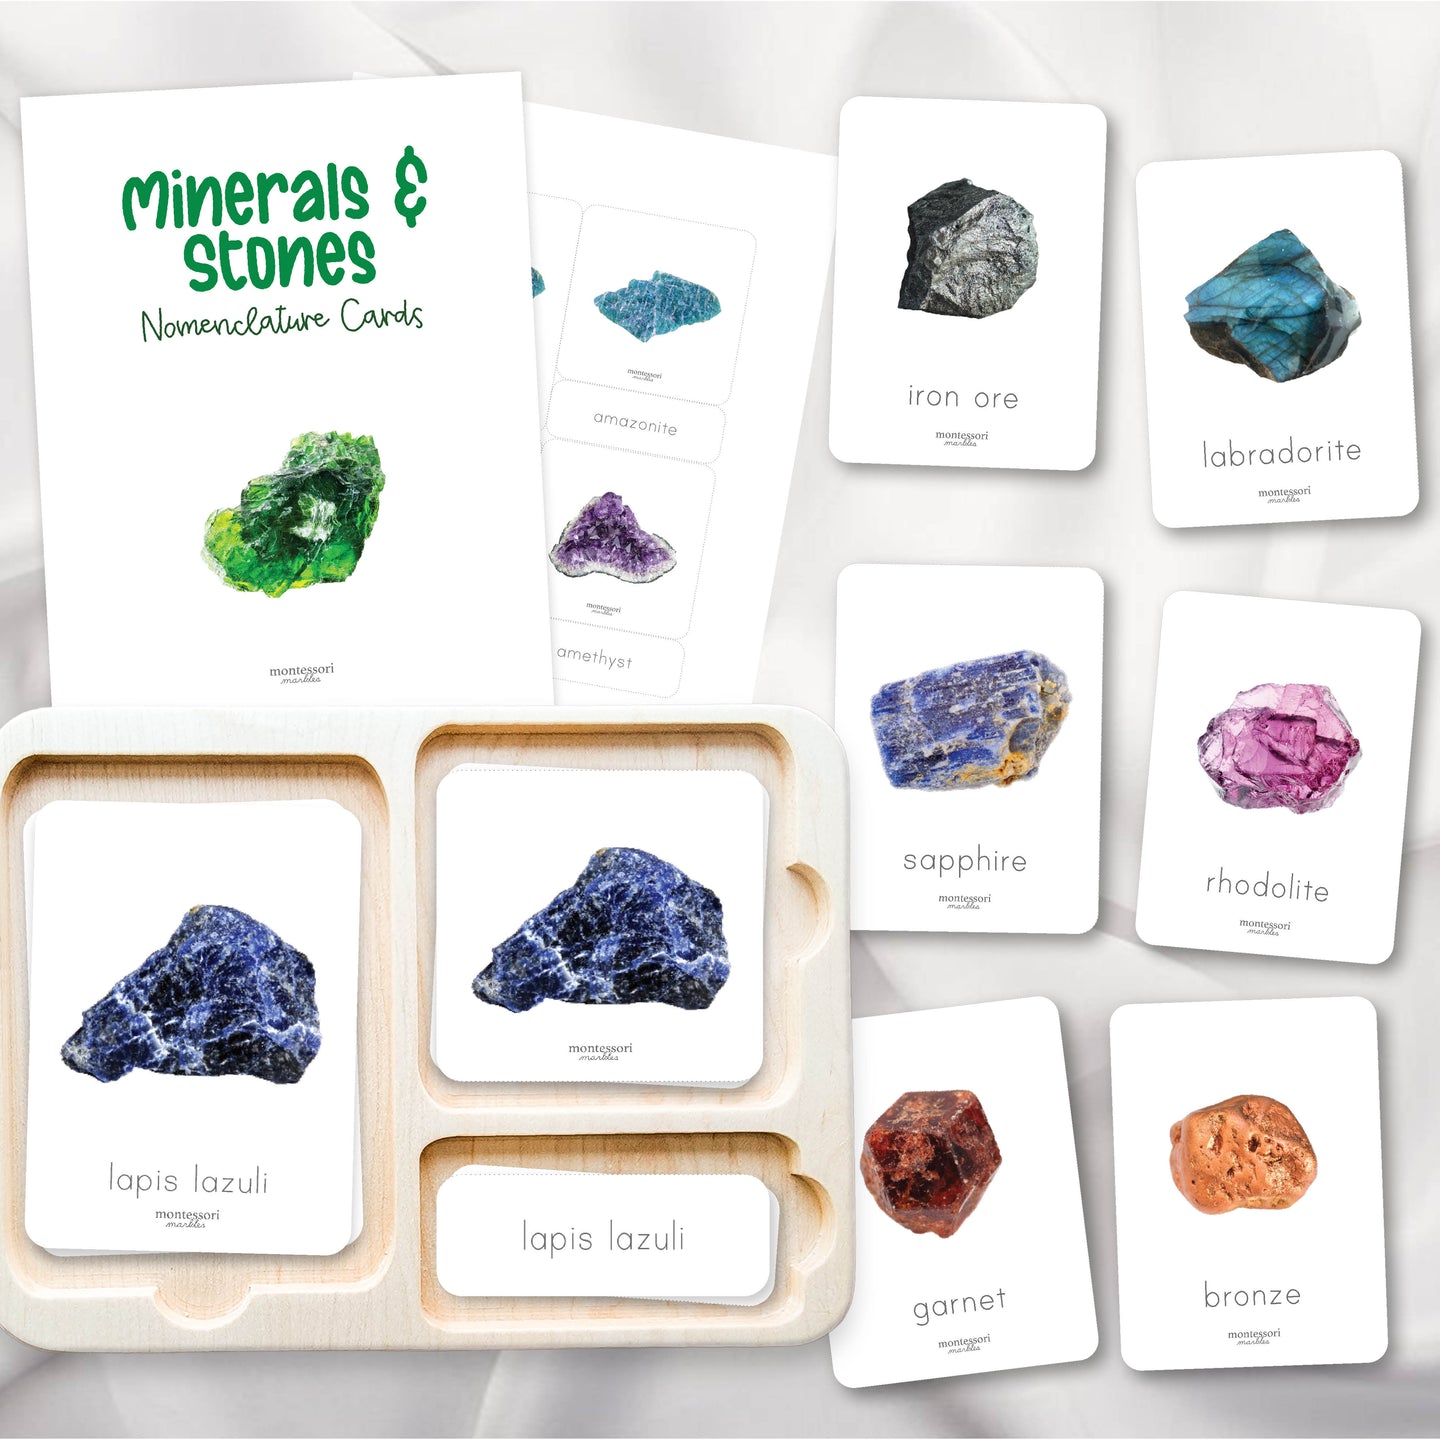 Minerals & Stones Nomenclature Cards